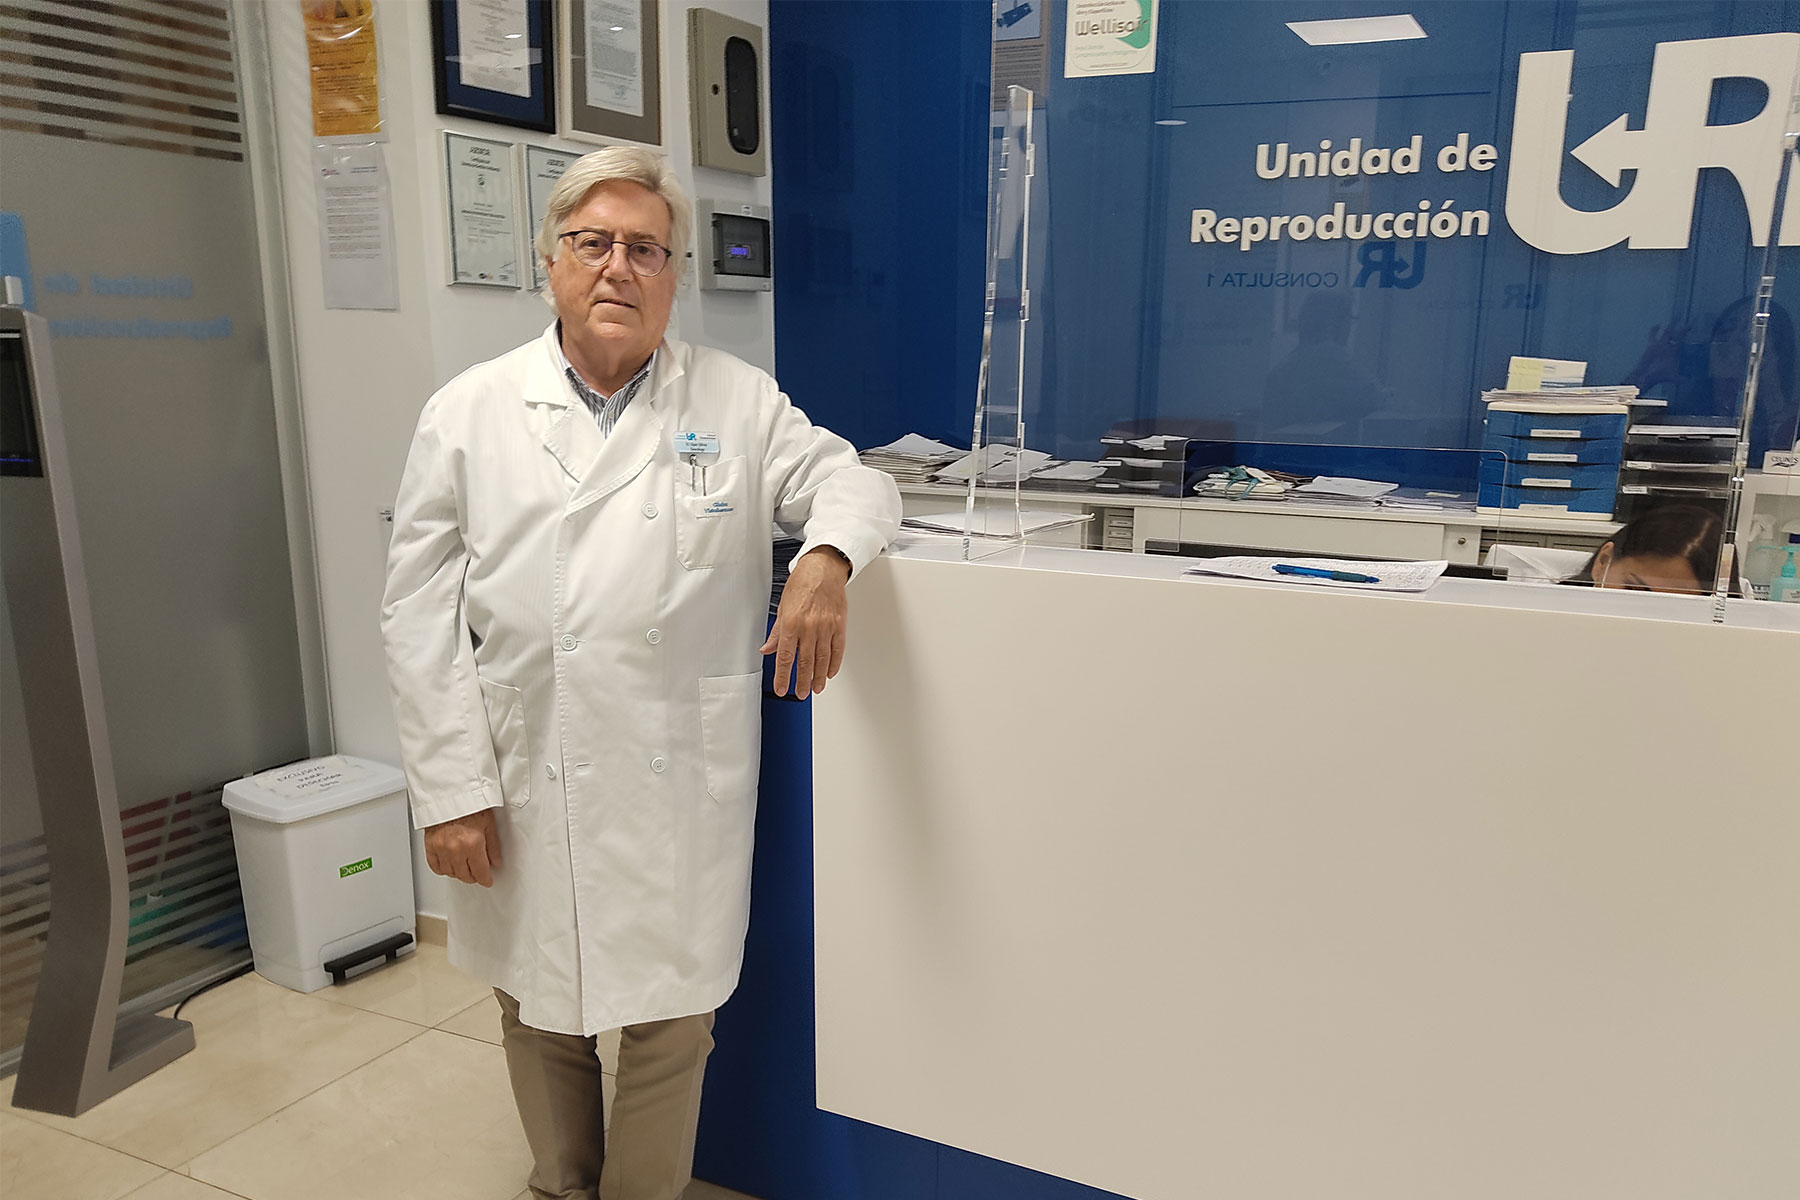 Verjüngung der Eierstöcke ein Interview mit Dr. López Gálvez